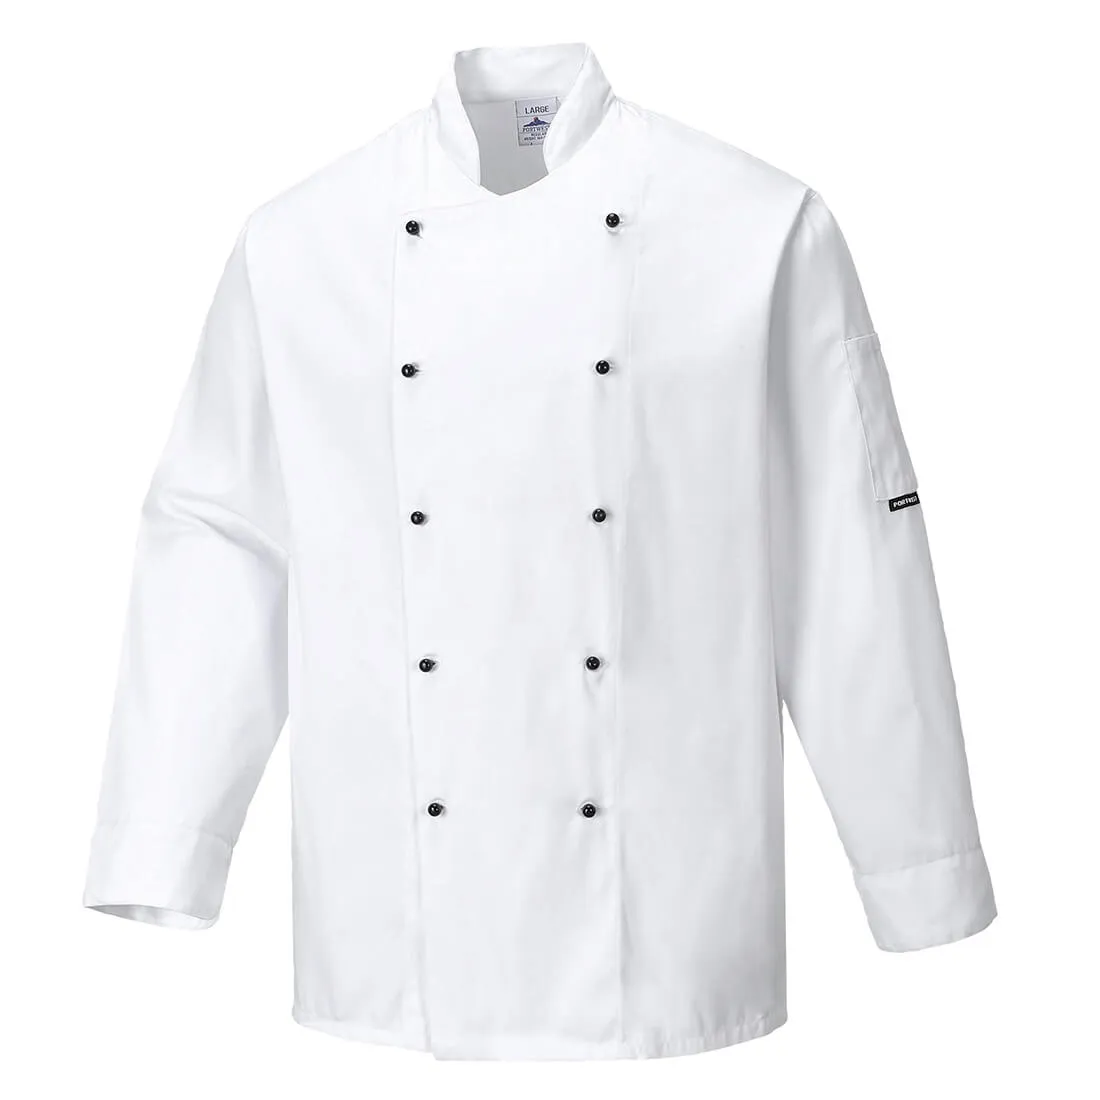 Portwest Unisex Somerset Chefs Jacket - White, 2XL